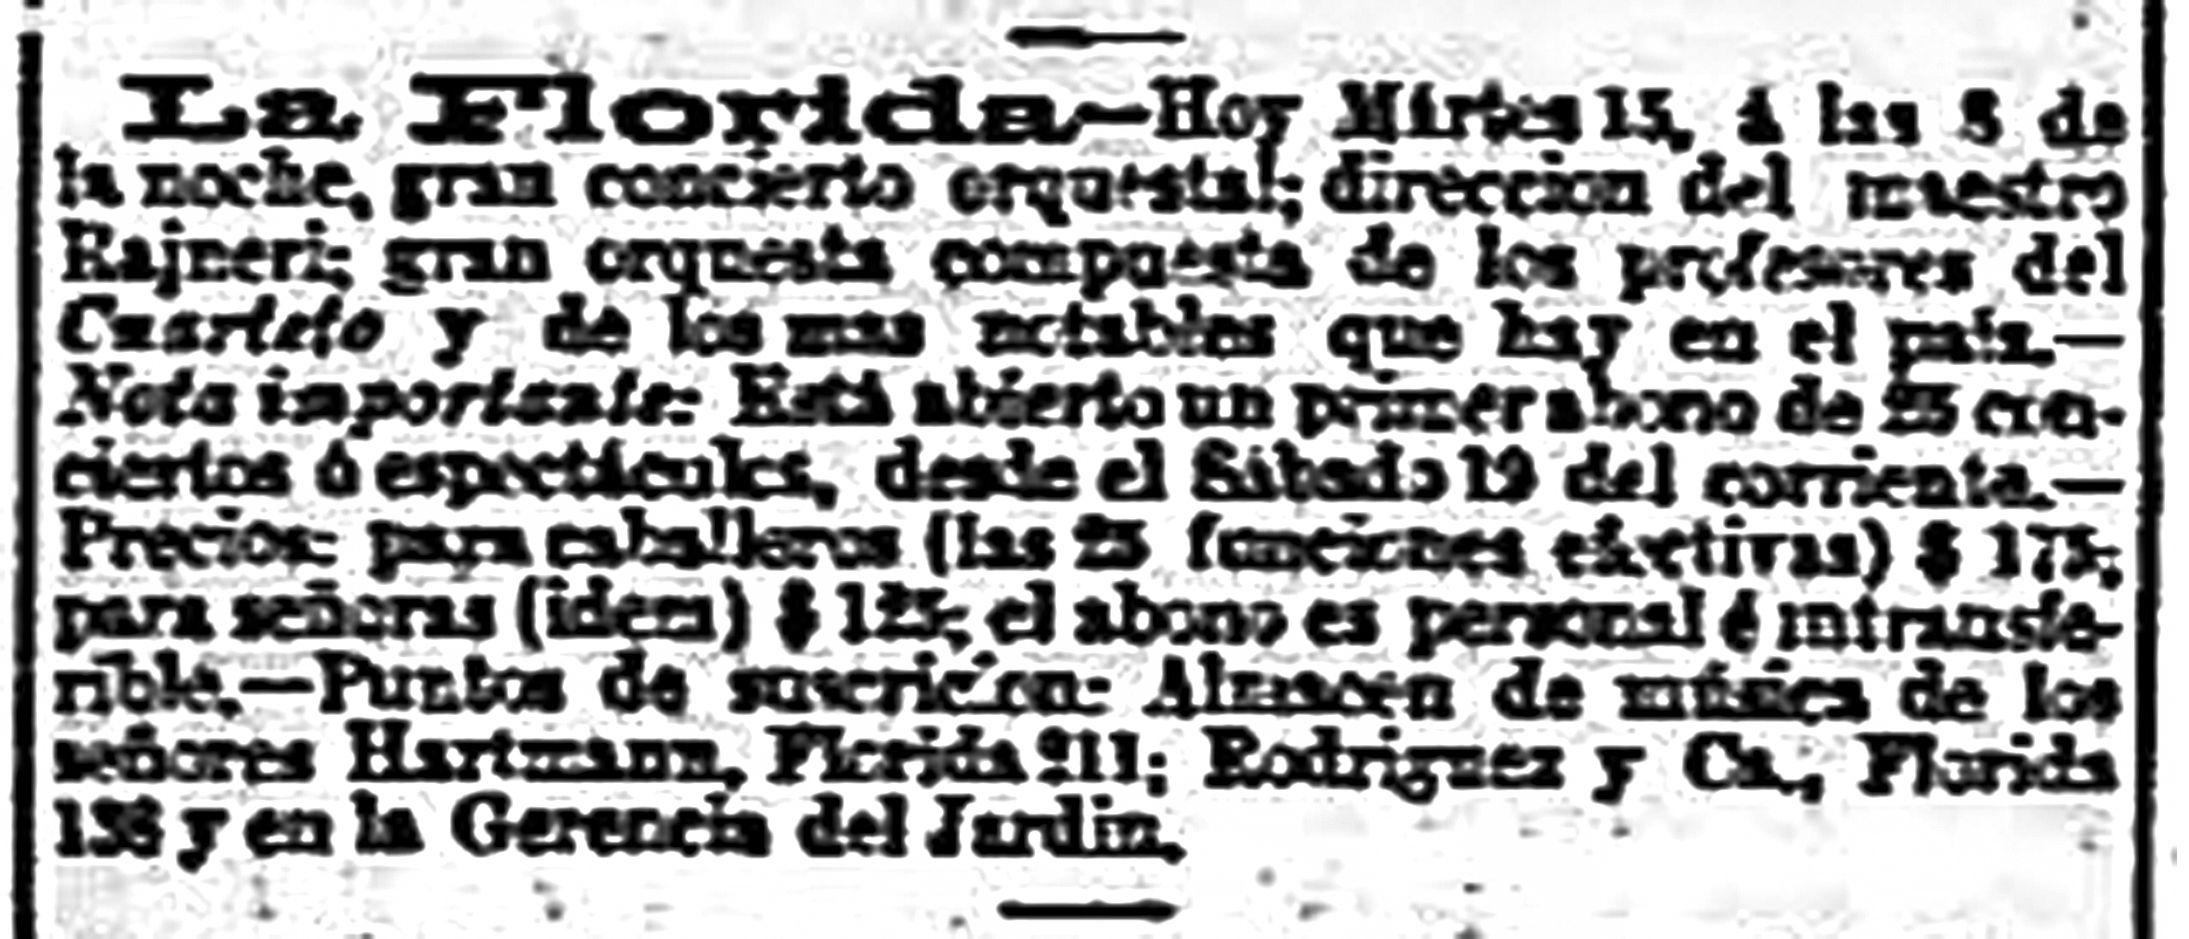 Anuncio del "gran concierto orquestal" en La Florida. La Nación XII, N.º 3354, 15 de noviembre de 1881, p. 2.